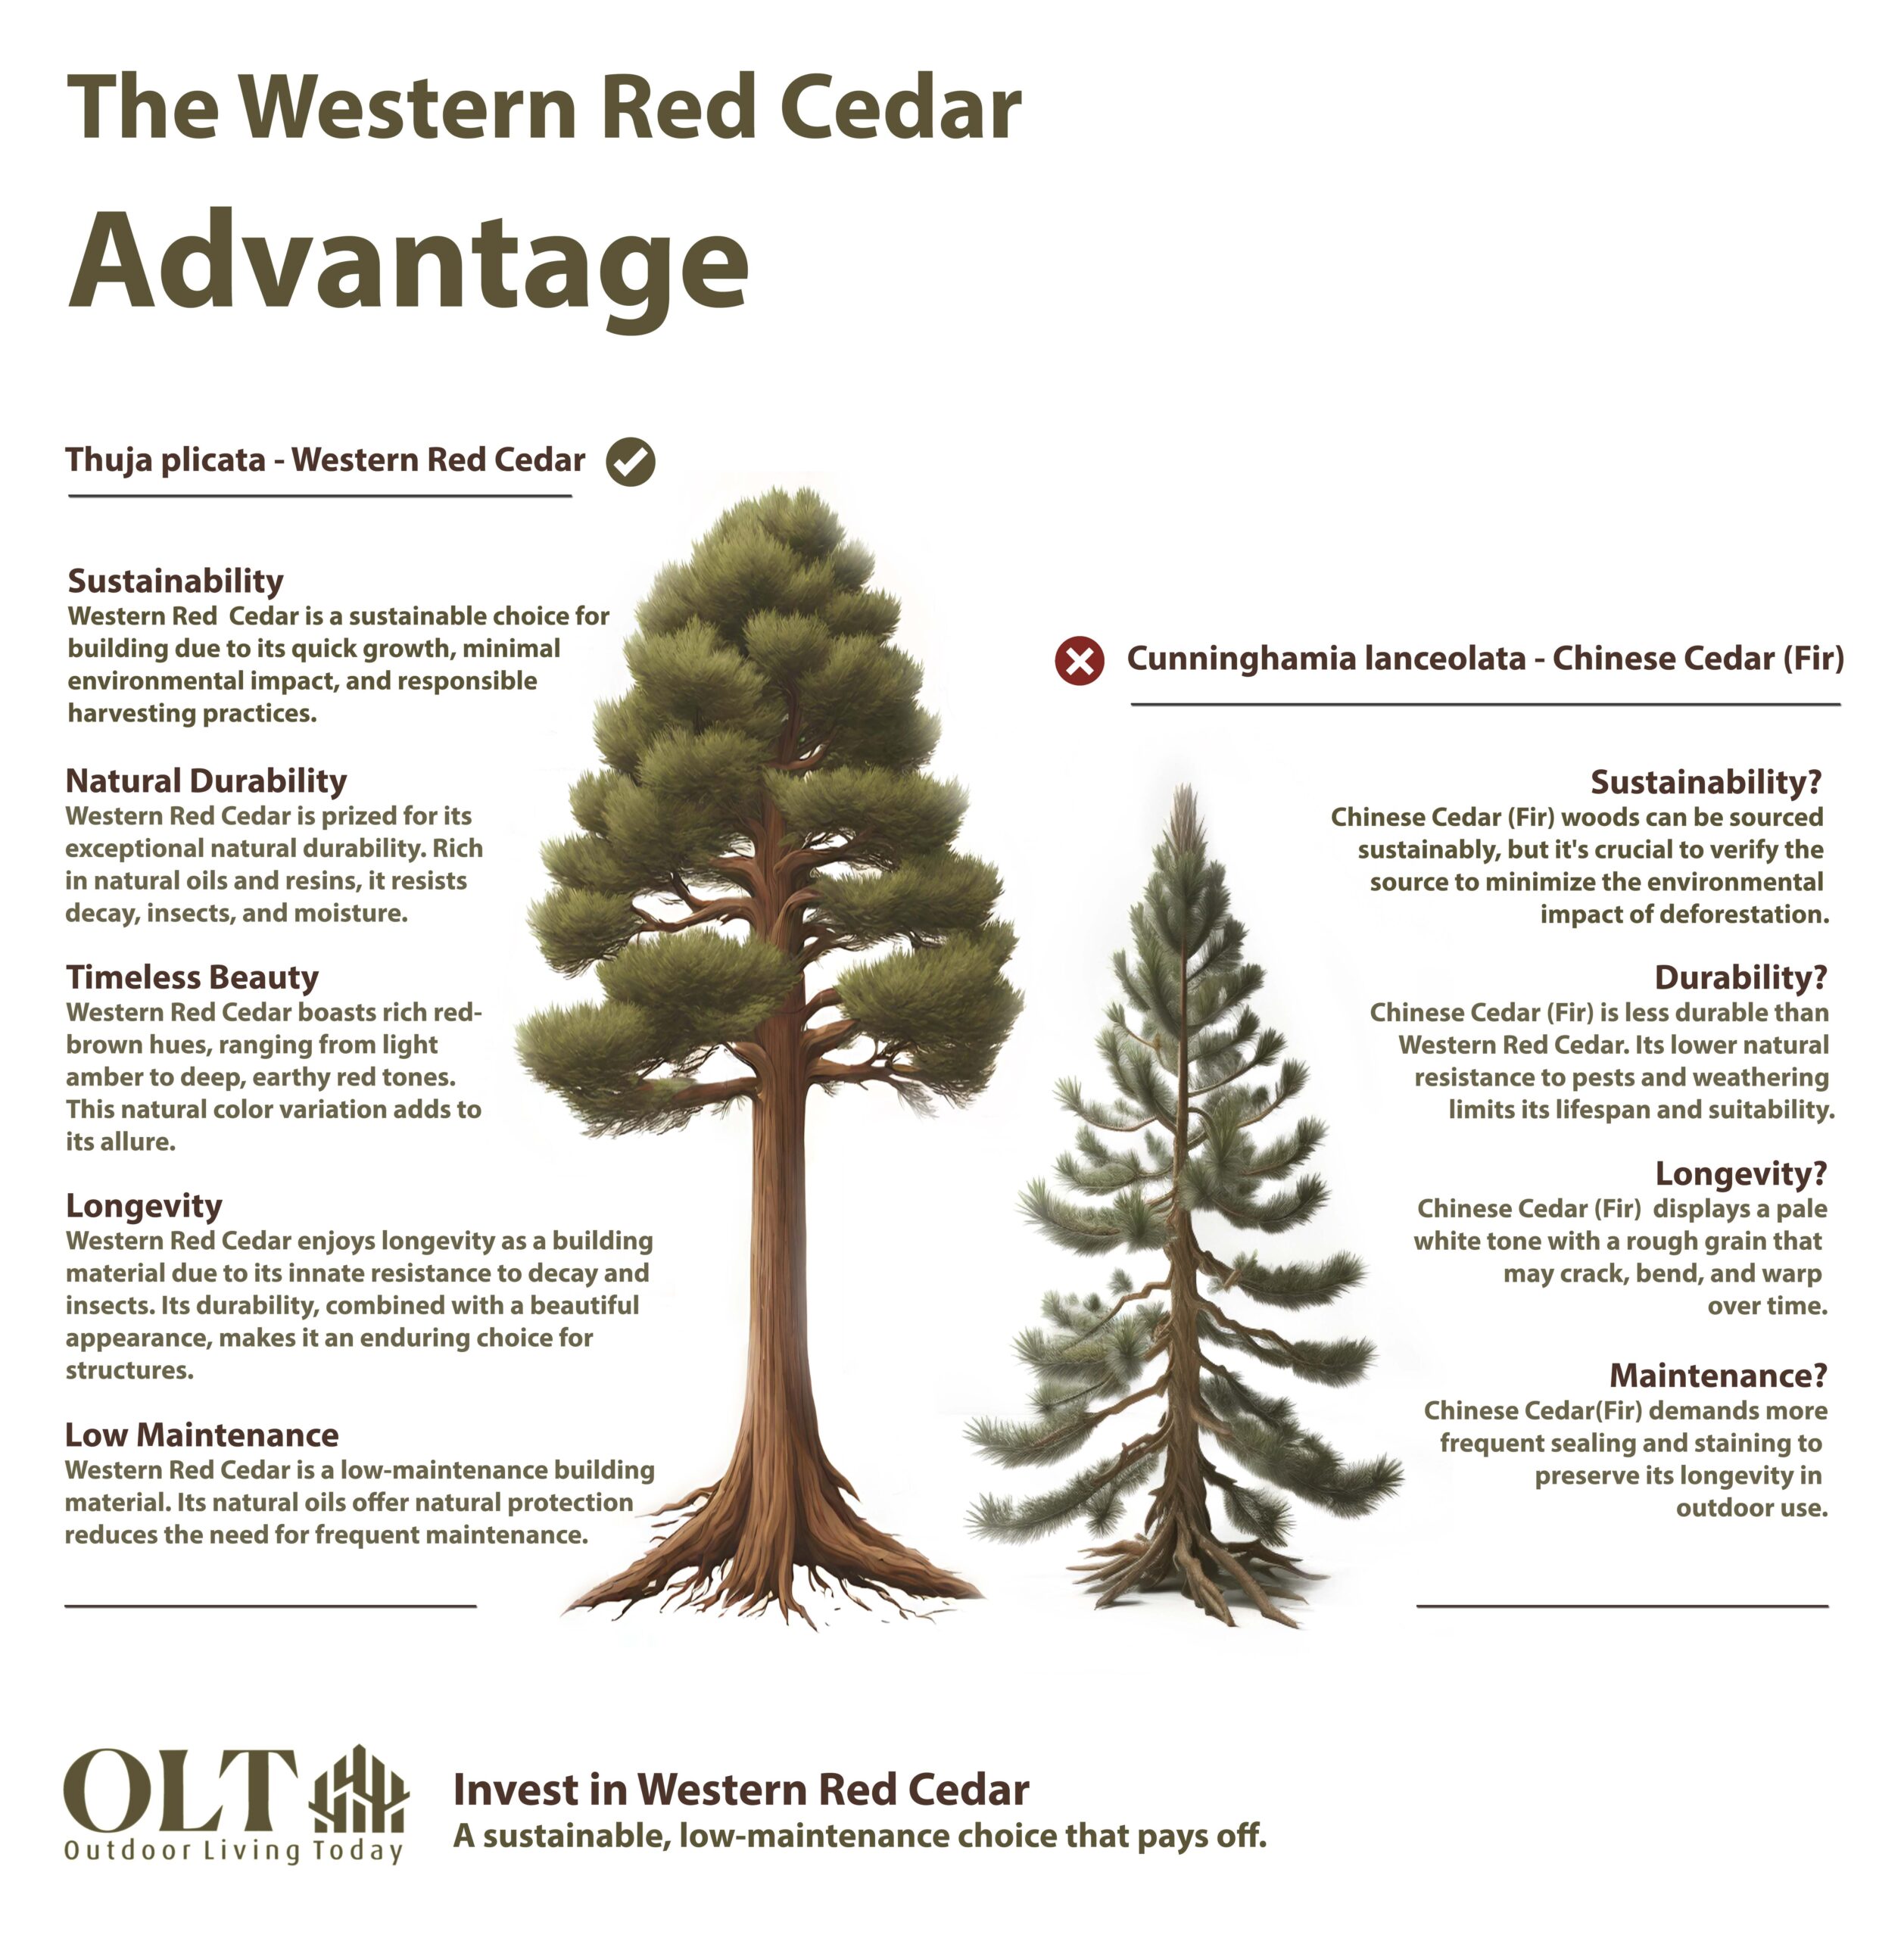 The Western Red Cedar Advantage